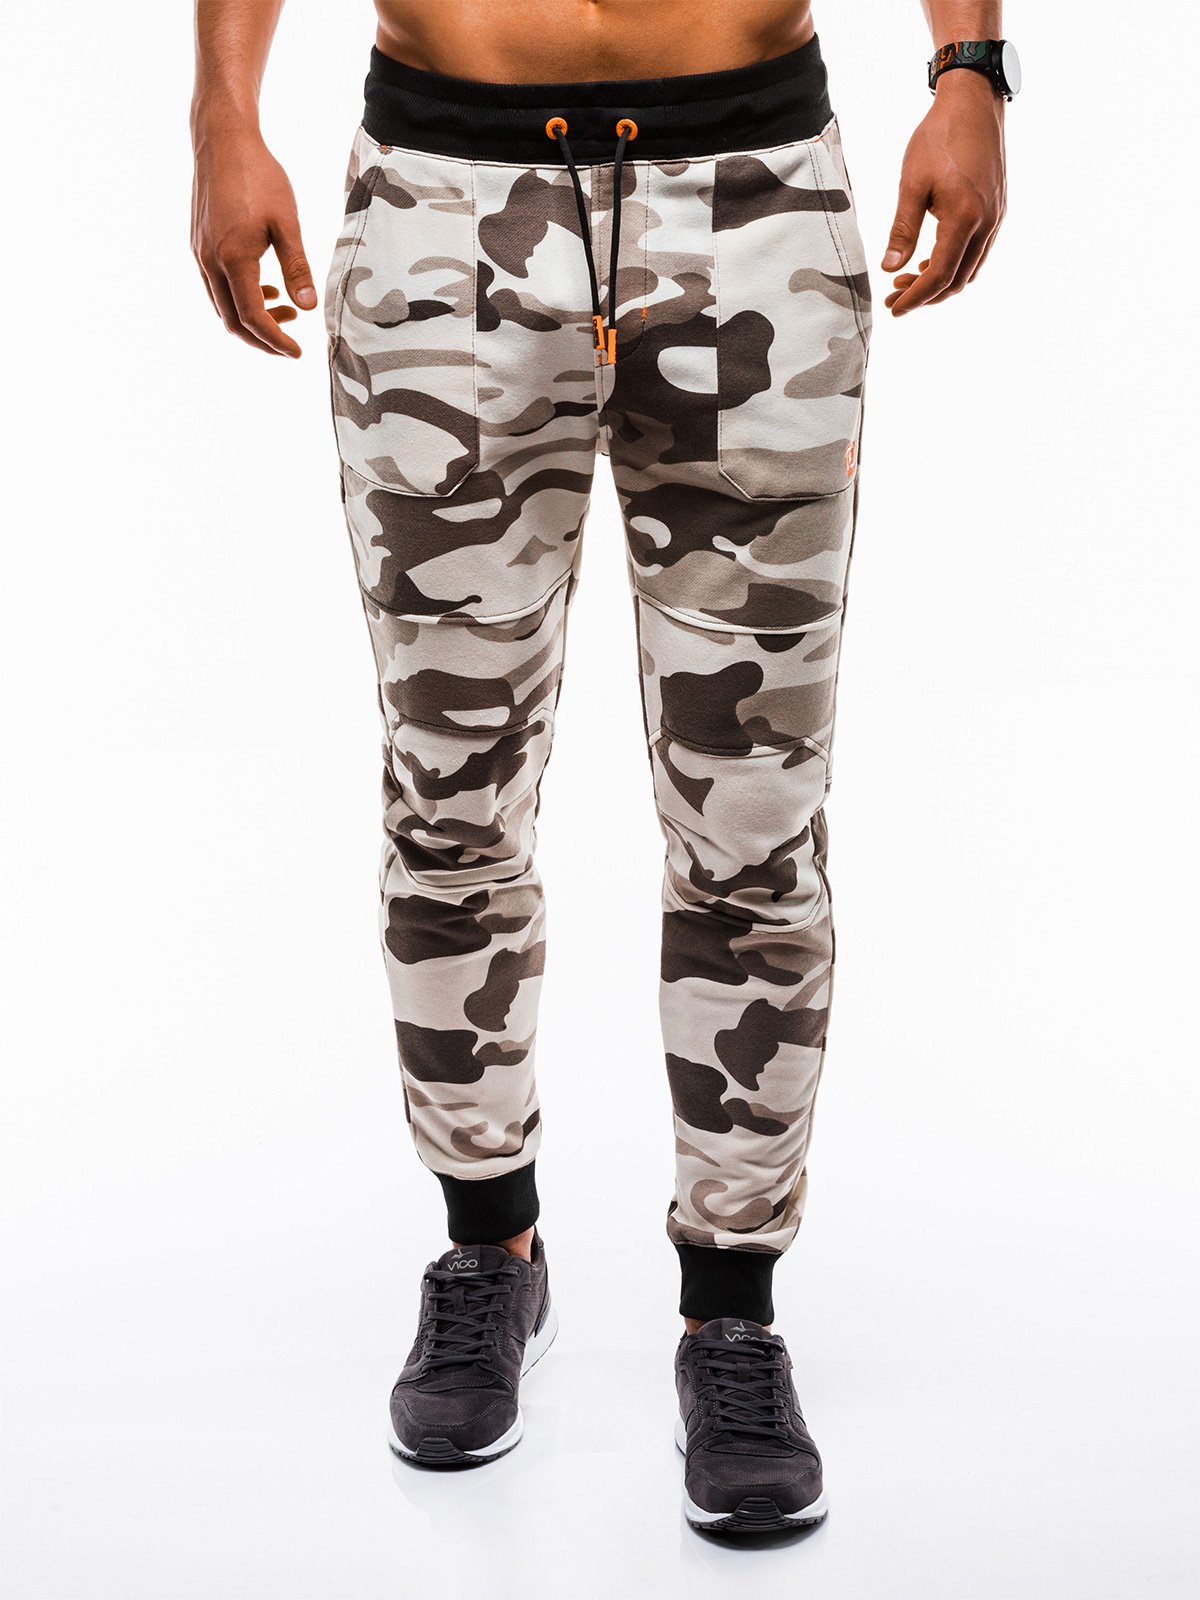 Men's sweatpants P820 - beige/camo | MODONE wholesale - Clothing For Men